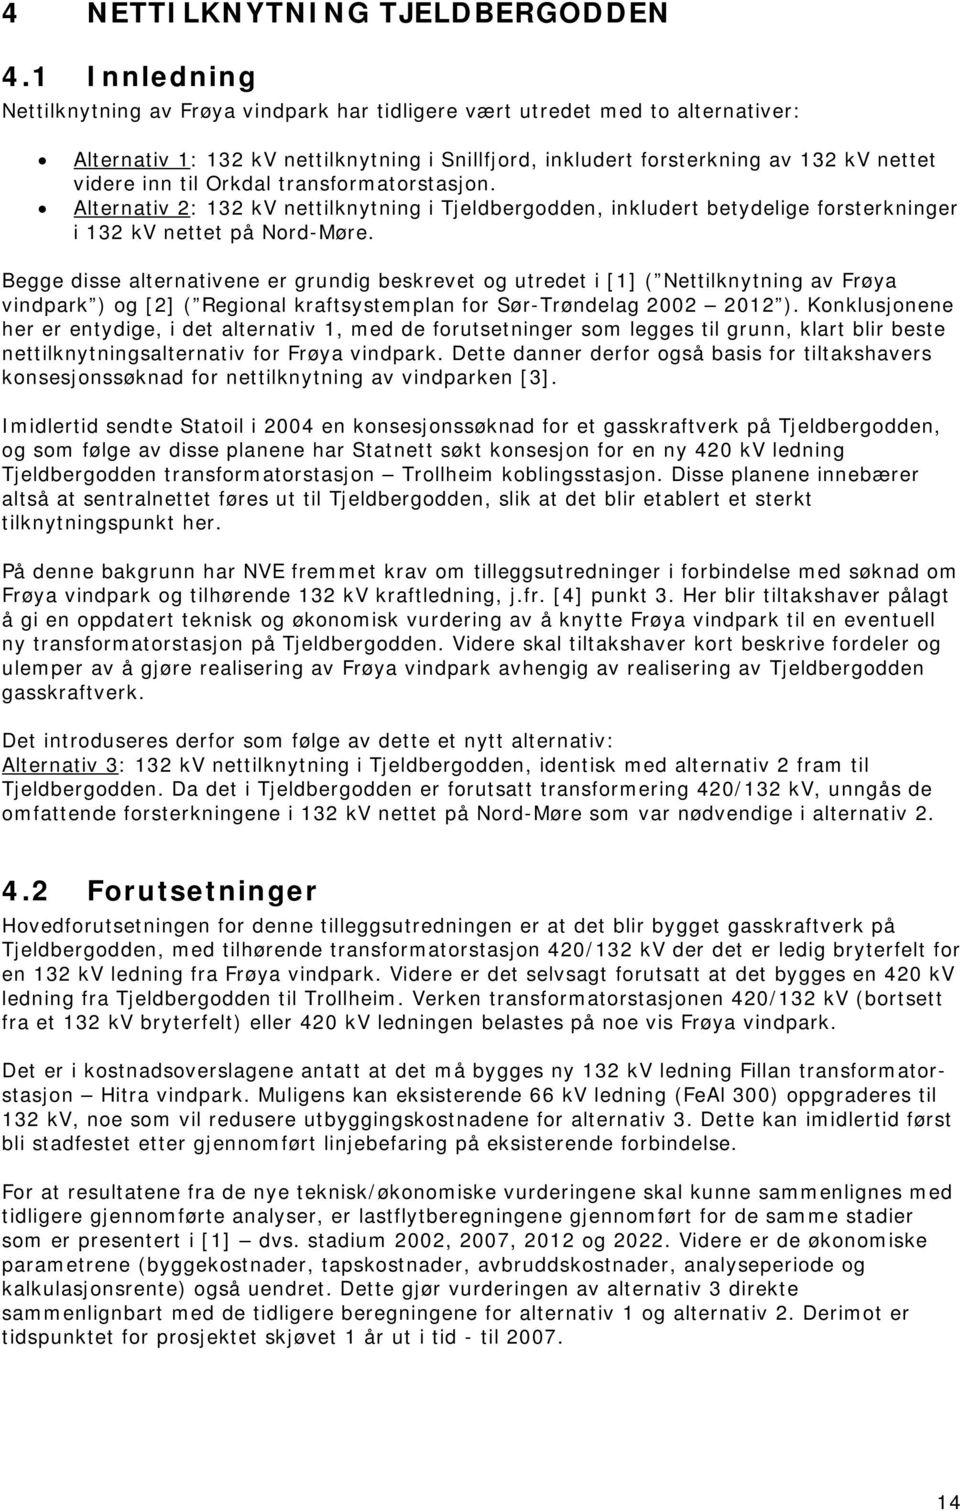 Orkdal transformatorstasjon. Alternativ 2: 132 kv nettilknytning i Tjeldbergodden, inkludert betydelige forsterkninger i 132 kv nettet på Nord-Møre.